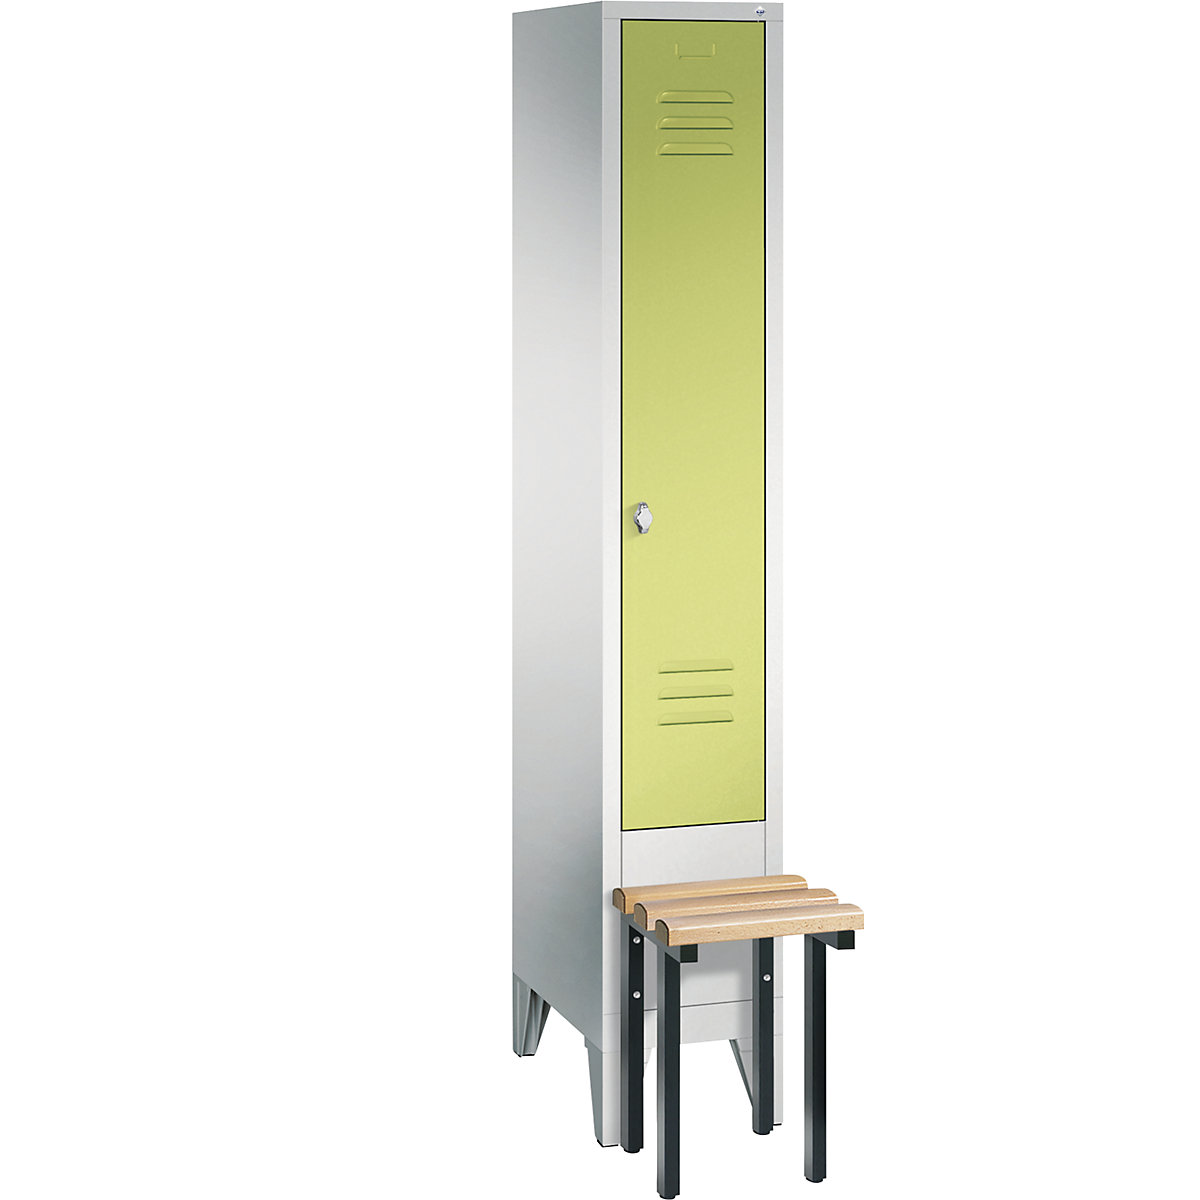 Garderobna omara CLASSIC s klopjo – C+P, 1 predelek, širina 300 mm/predelek, svetlo sive / rumeno zelene barve-8